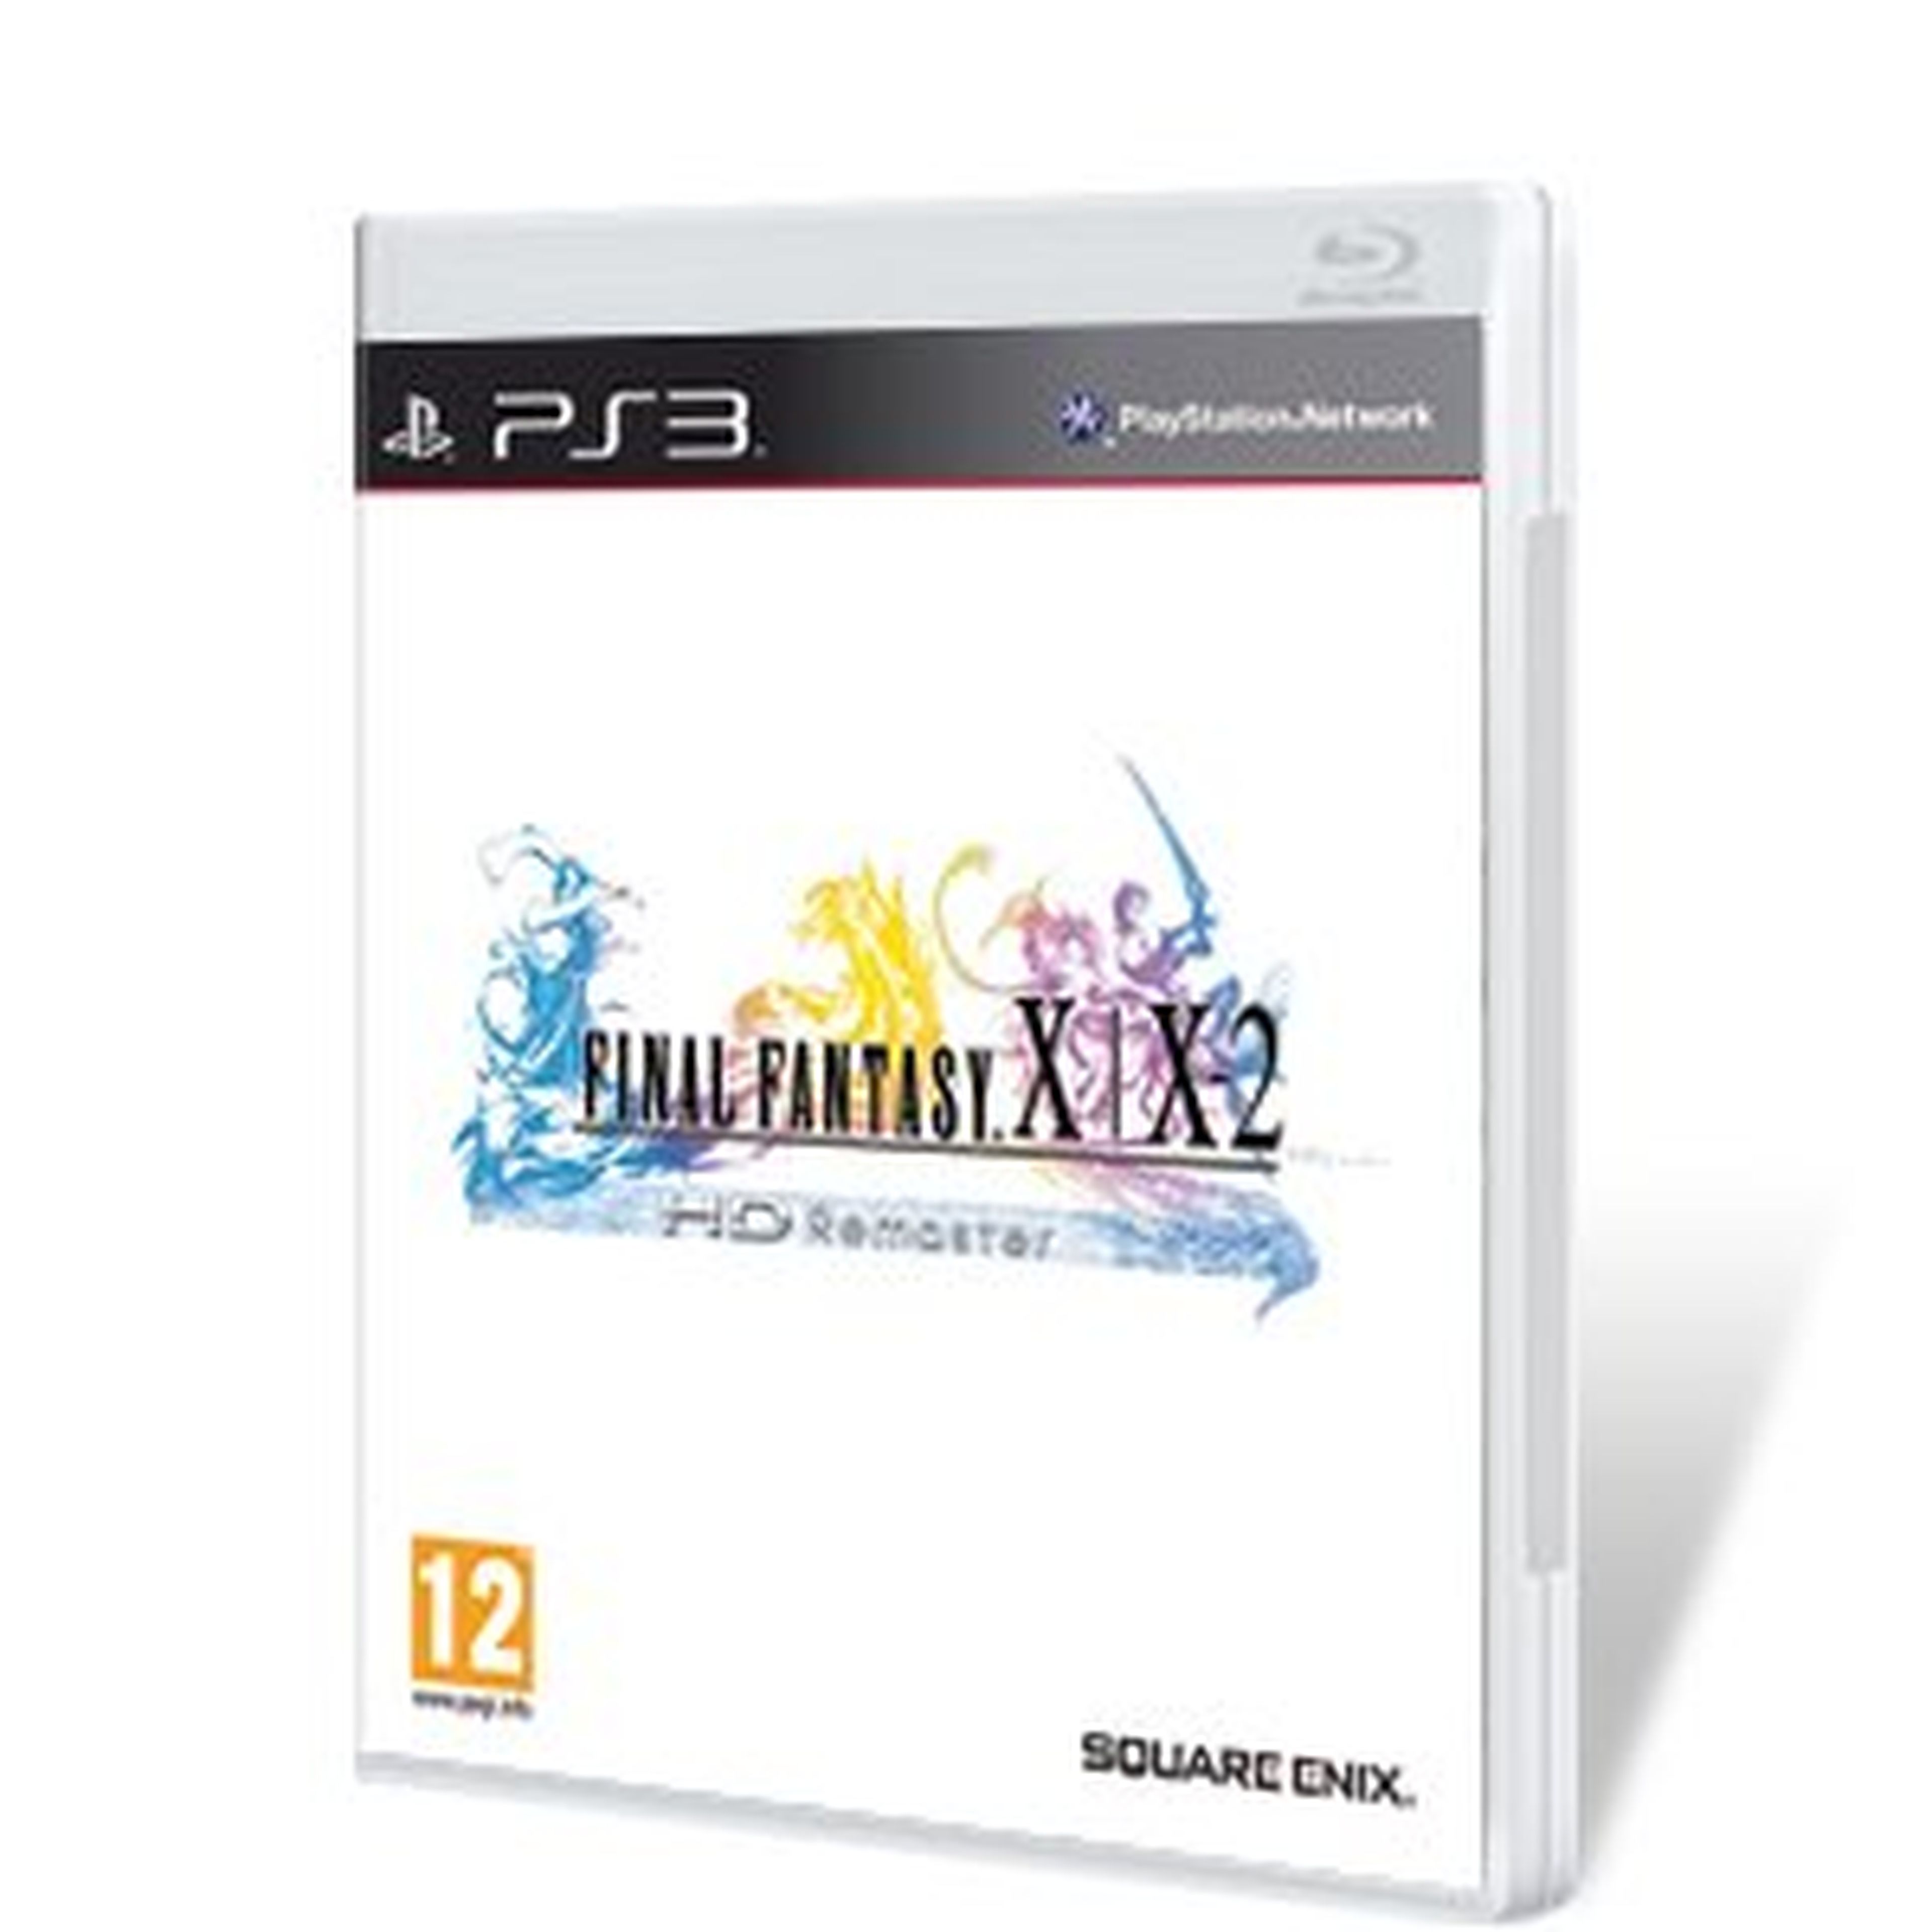 Final Fantasy X-2 HD para PS3